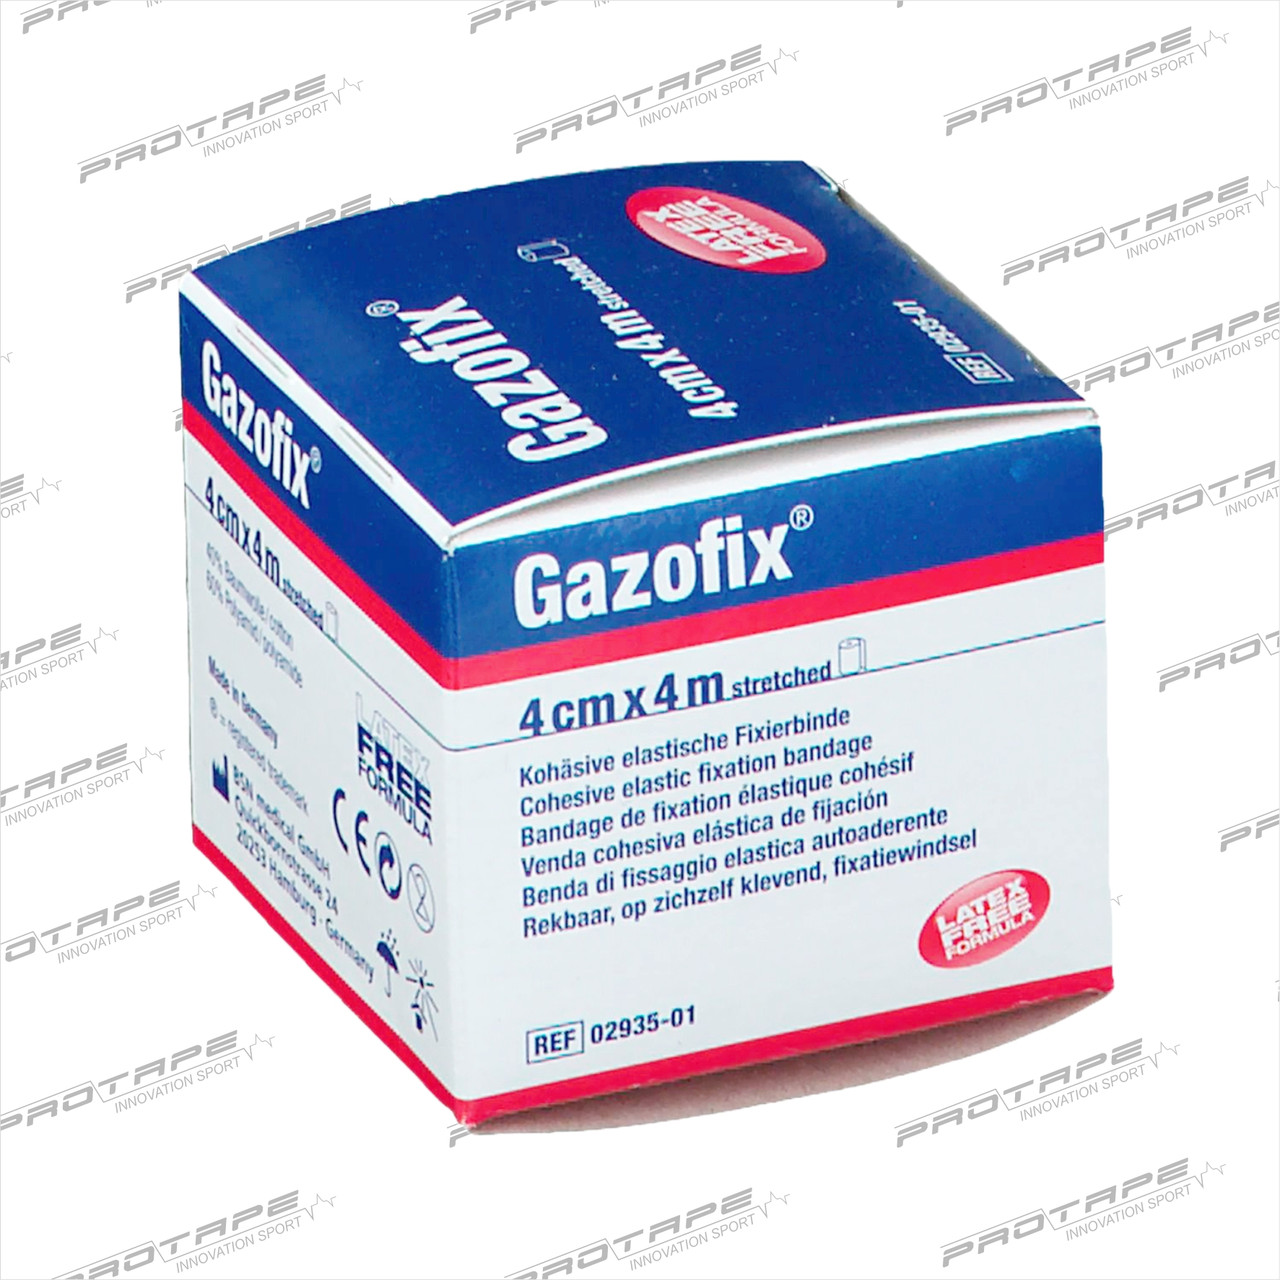 Фиксирующая повязка Gazofix  сплоченная 4 см x 4 м цвета кожи, 1 шт.